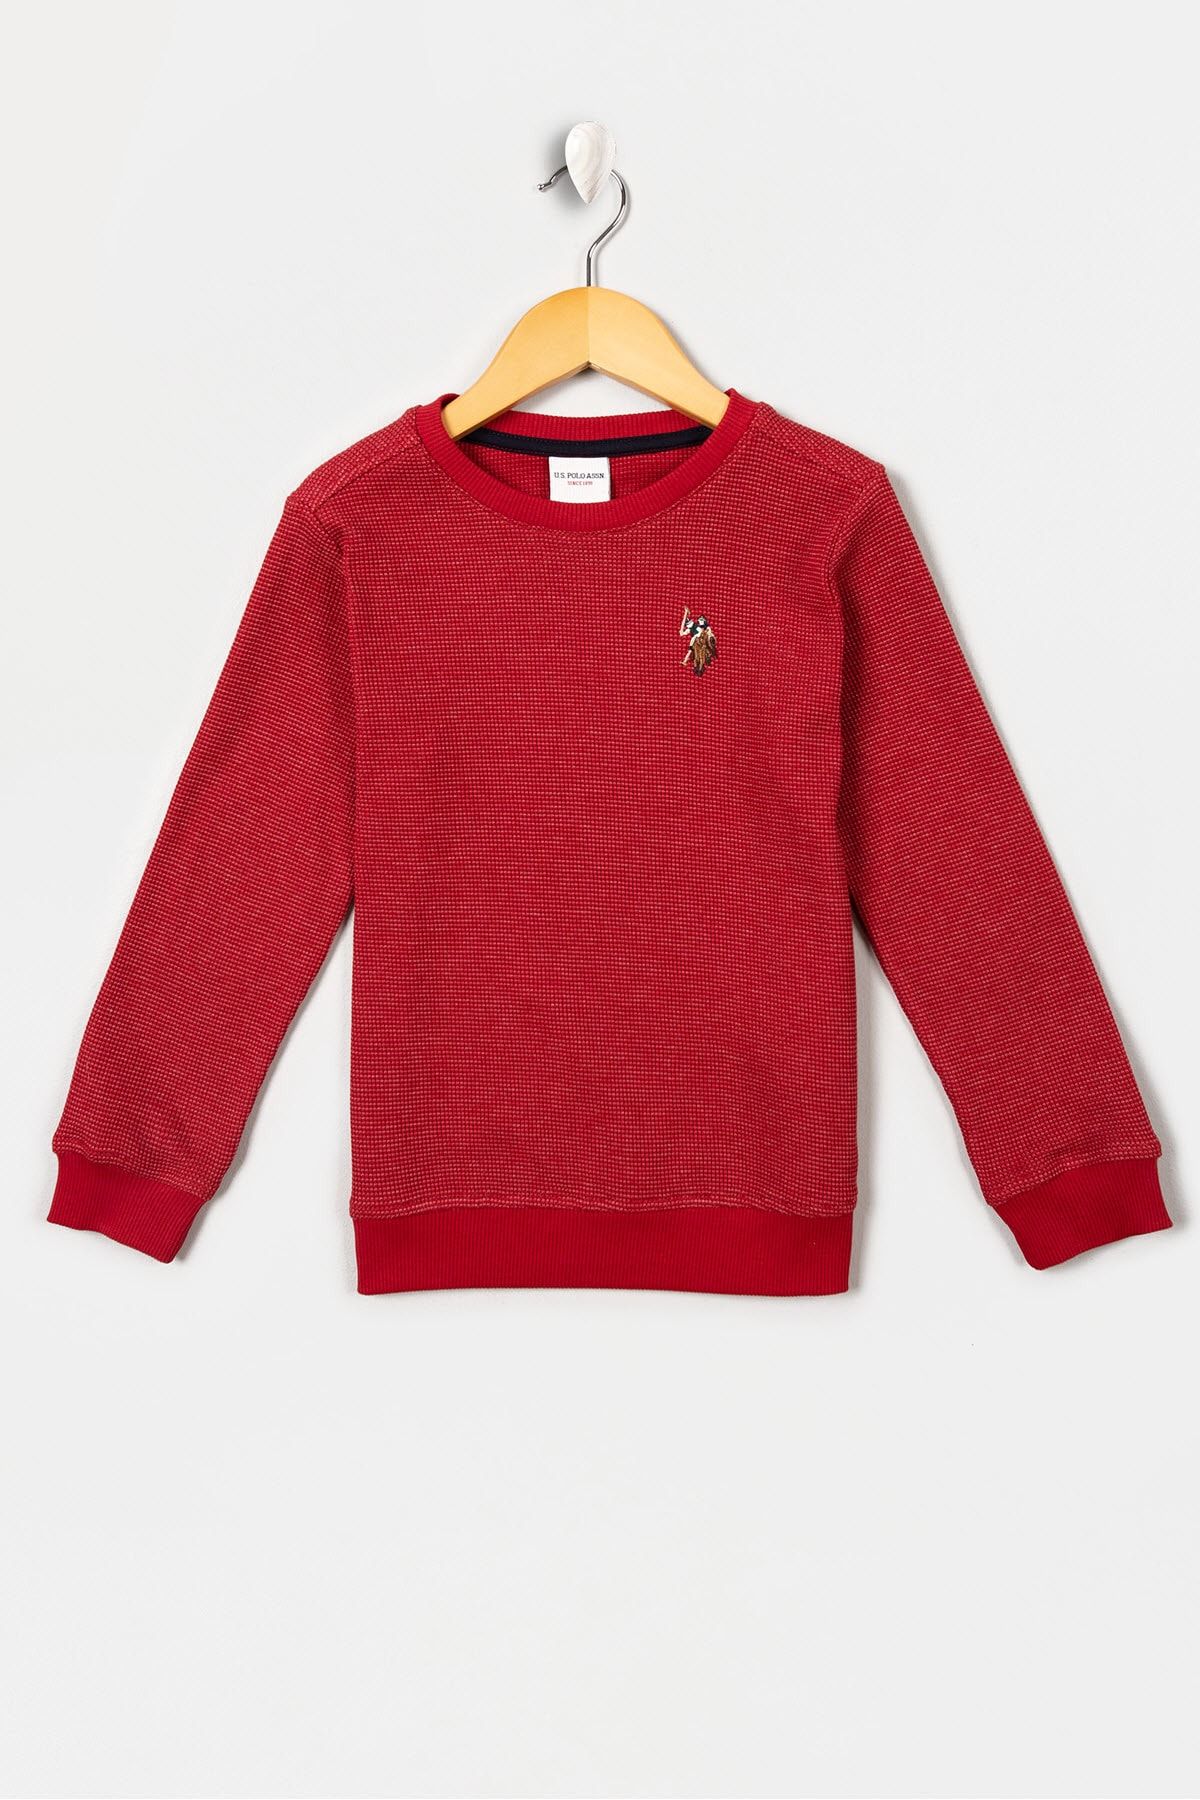 U.S. Polo Assn. Kırmızı Erkek Çocuk Sweatshirt